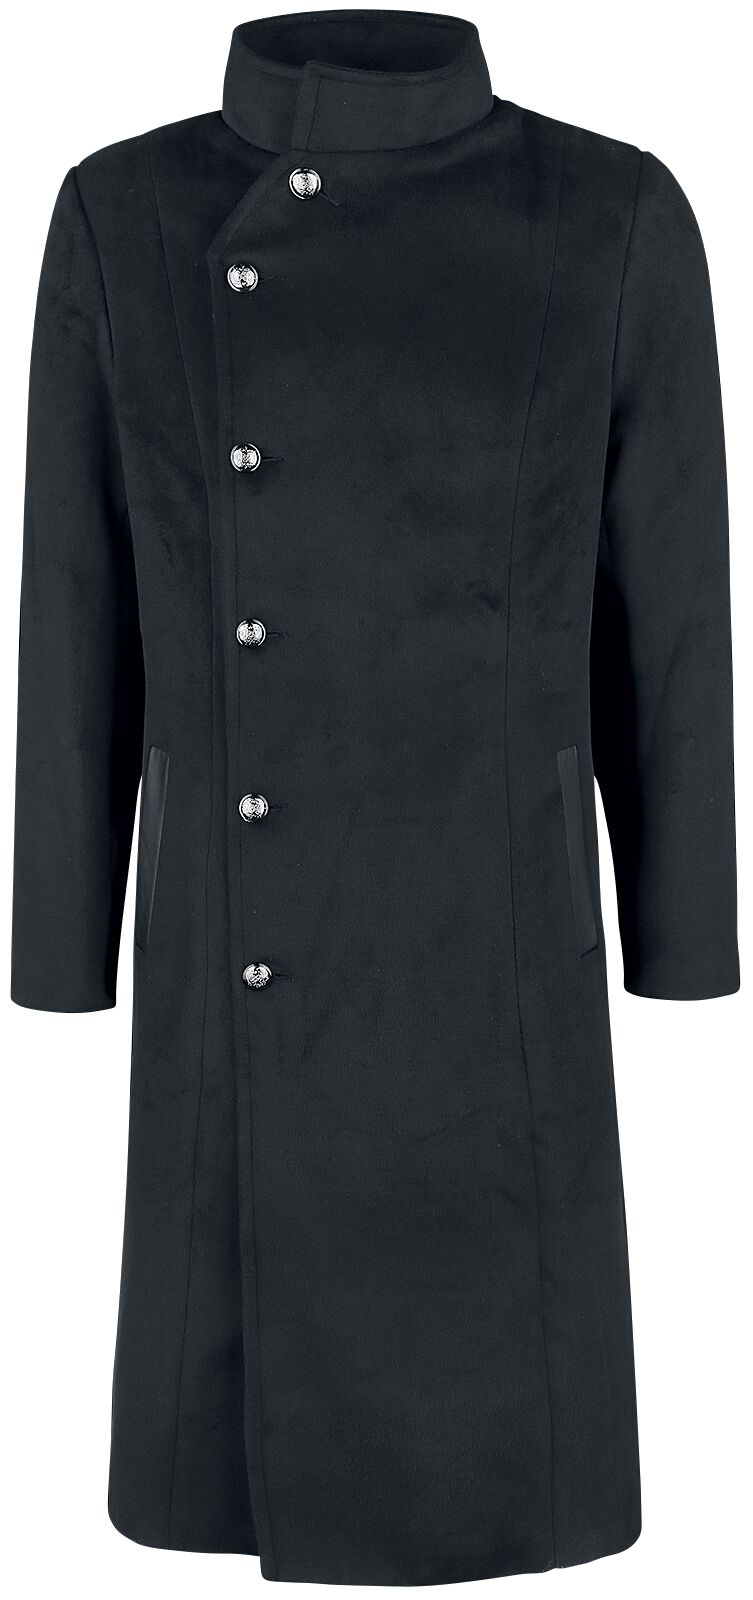 H&R London - Gothic Wintermantel - Winter Coat - S bis 4XL - für Männer - Größe L - schwarz